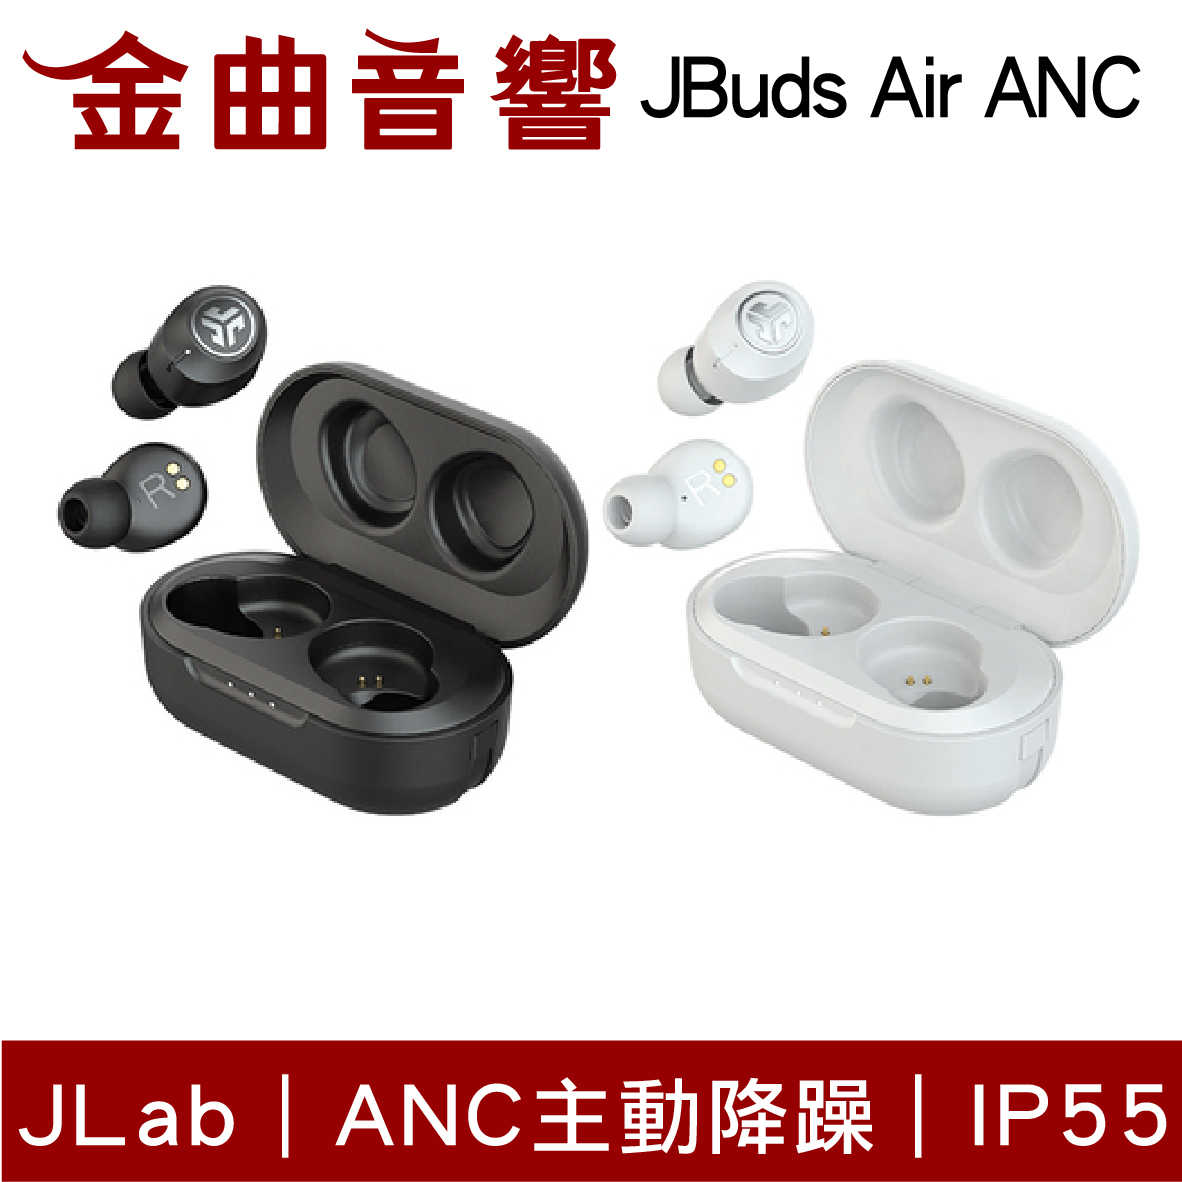 JLab JBuds Air ANC 降噪 真無線 藍芽 耳機 | 金曲音響